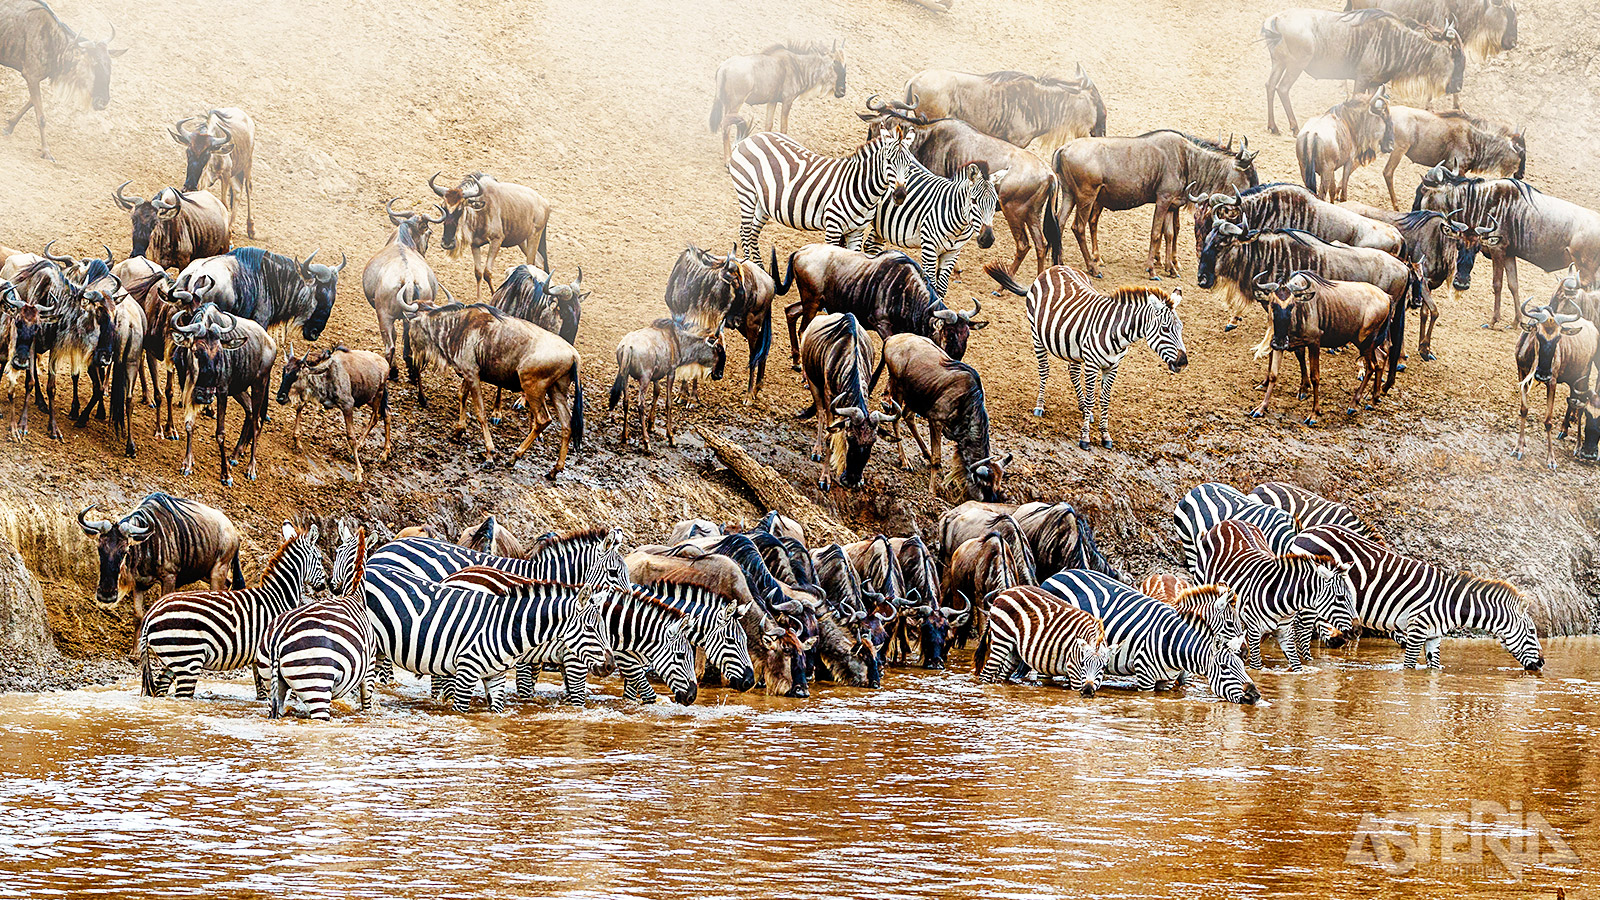 Masai Mara is wereldwijd bekend vanwege de jaarlijkse migratie van wildebeesten